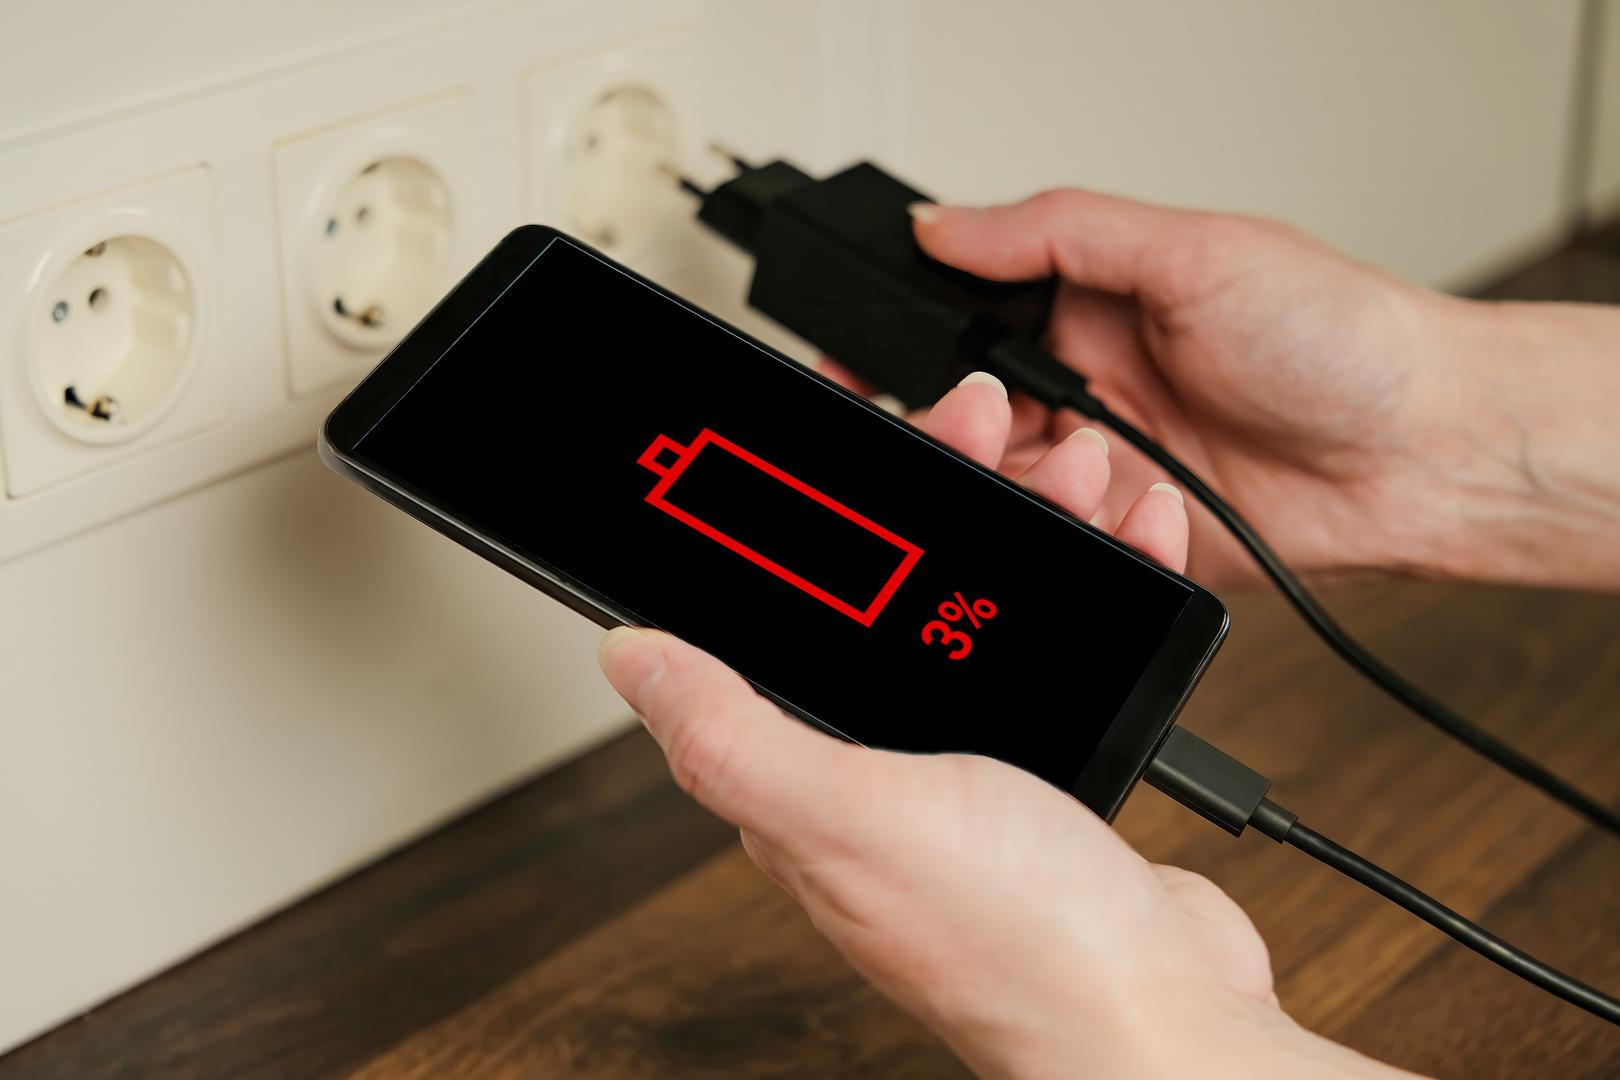 Koristite provjerene kabele za punjenje: "Jedan od najzanemarenijih načina trošenja baterije vašeg uređaja je korištenje jeftinih kabela trećih strana za punjenje vašeg telefona. Uvijek se pokušajte držati renomiranih i pouzdanih kabela, poput onih od proizvođača vašeg telefona. Punjač od tri metra koji ste pronašli negdje na internetu može biti primamljiv, ali bi također mogao isprazniti bateriju vašeg telefona, stoga ga se klonite!", savjetuje stručnjak. 